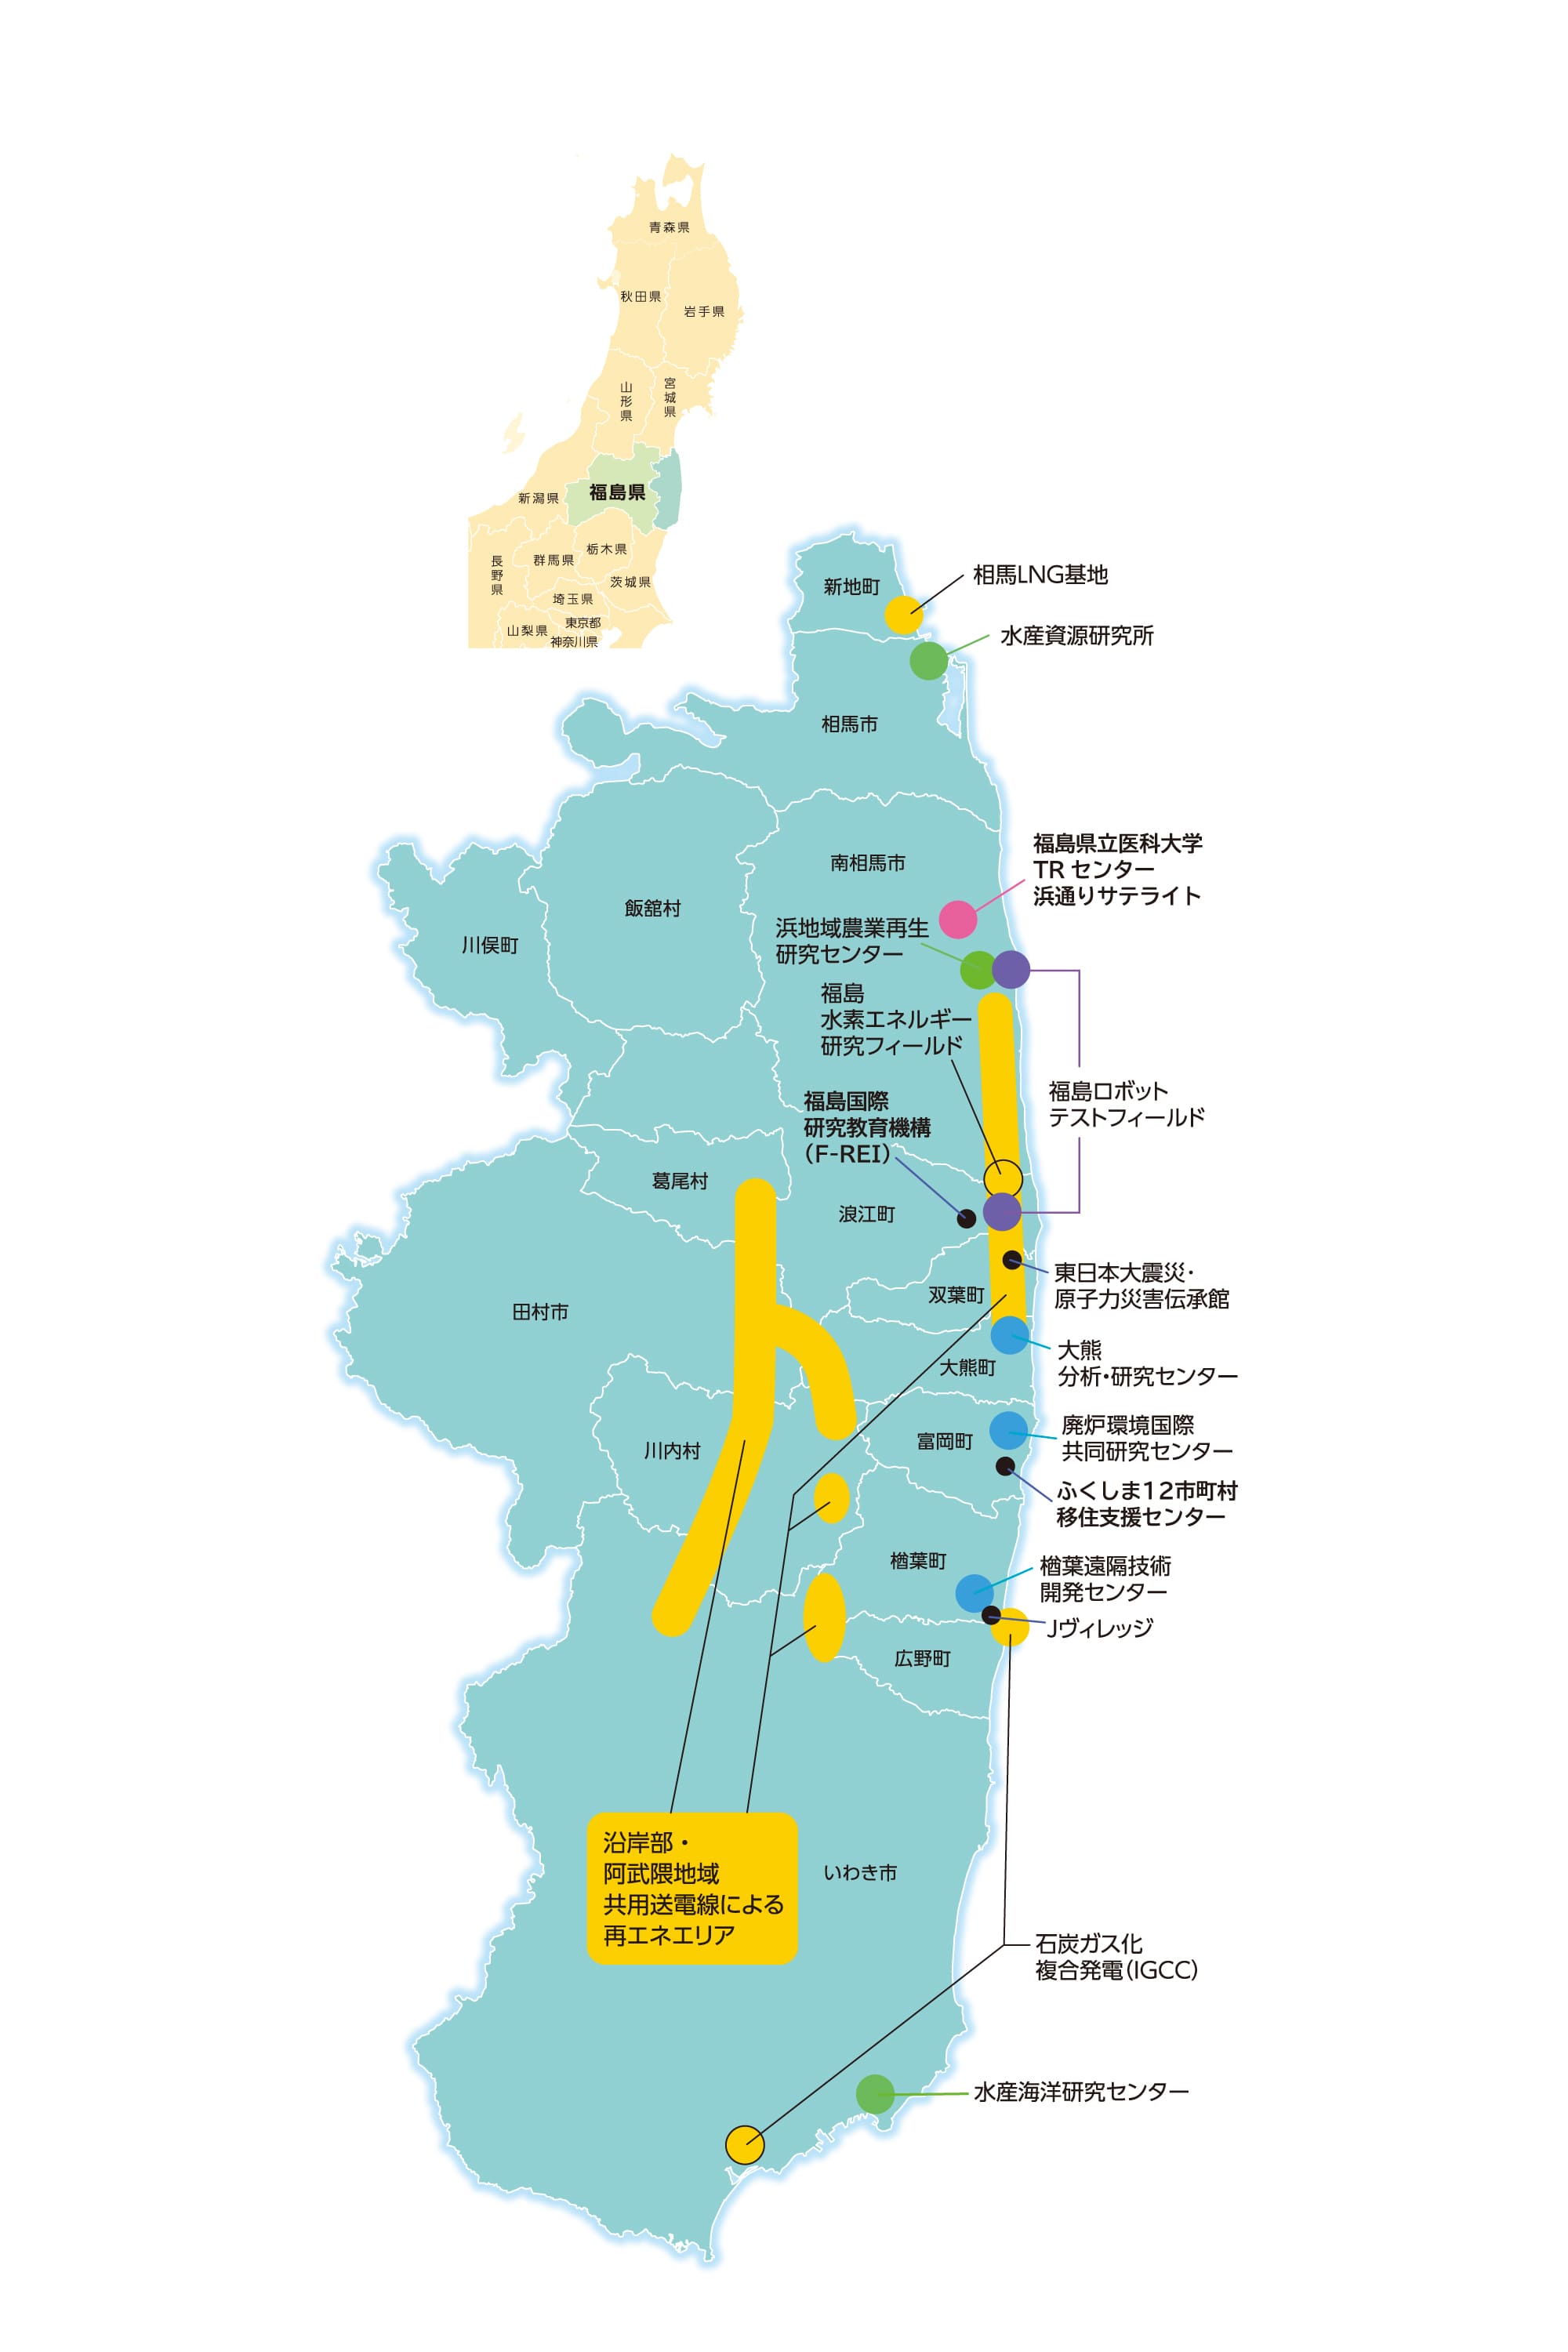 福島県浜通り周辺の地図。色は、各産業を表しており、各拠点の名称が記されている。地域ごとにさまざまな分野の産業が集積しているのがわかる